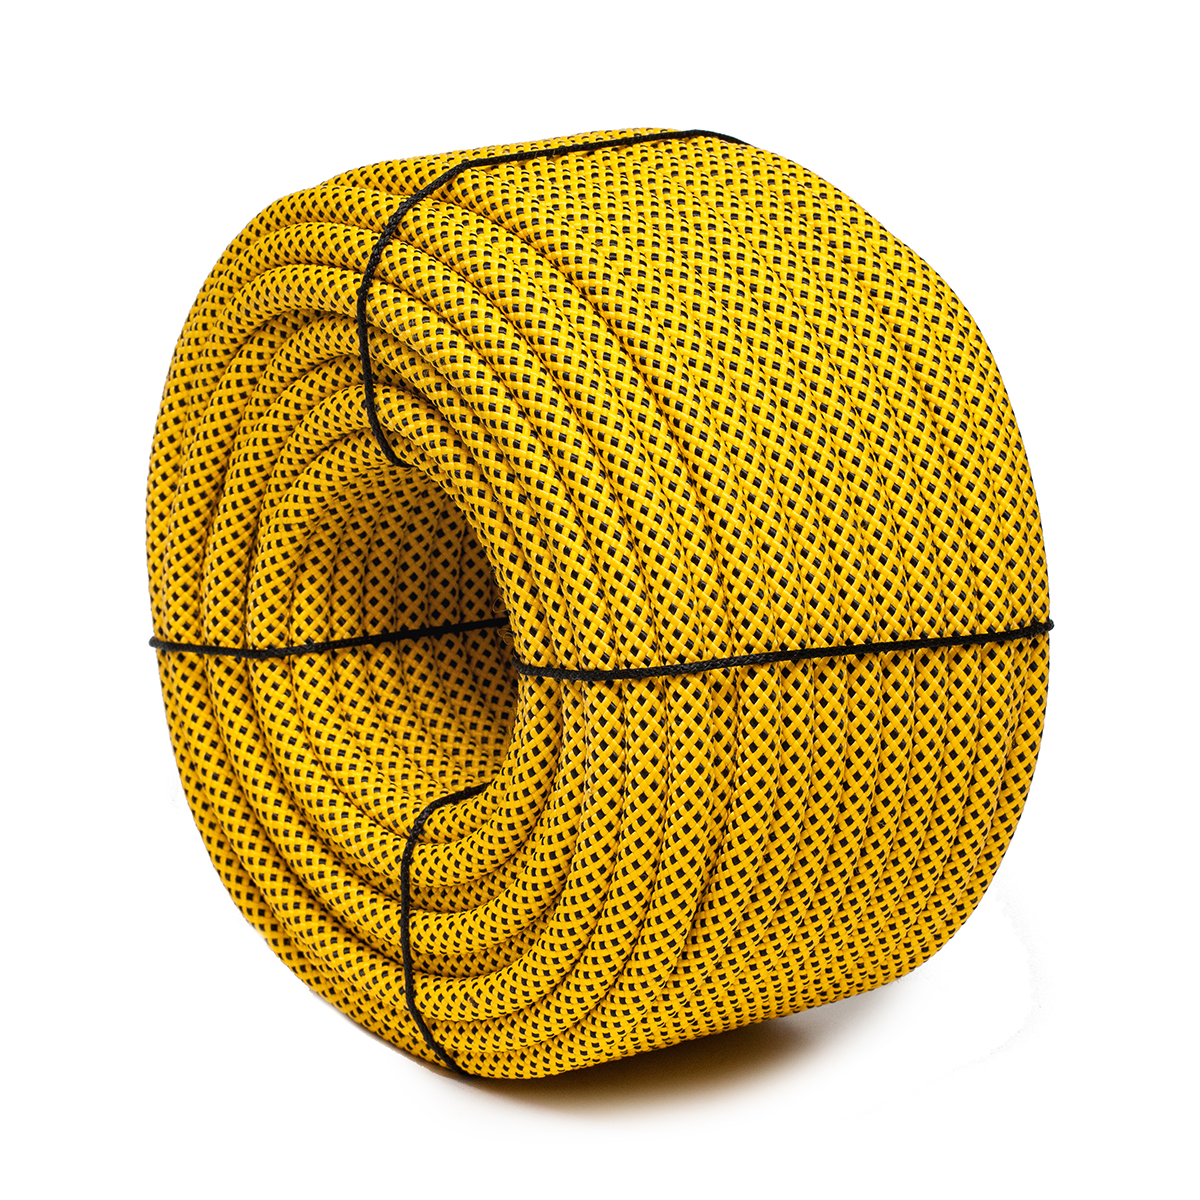 Шнур плетеный ЭКСТРИМ 12.0 мм, черно-желтый, 1400 кг, 50 м шнур для вязания 100% полиэфир 1мм 200м 75±10гр 09 кофе